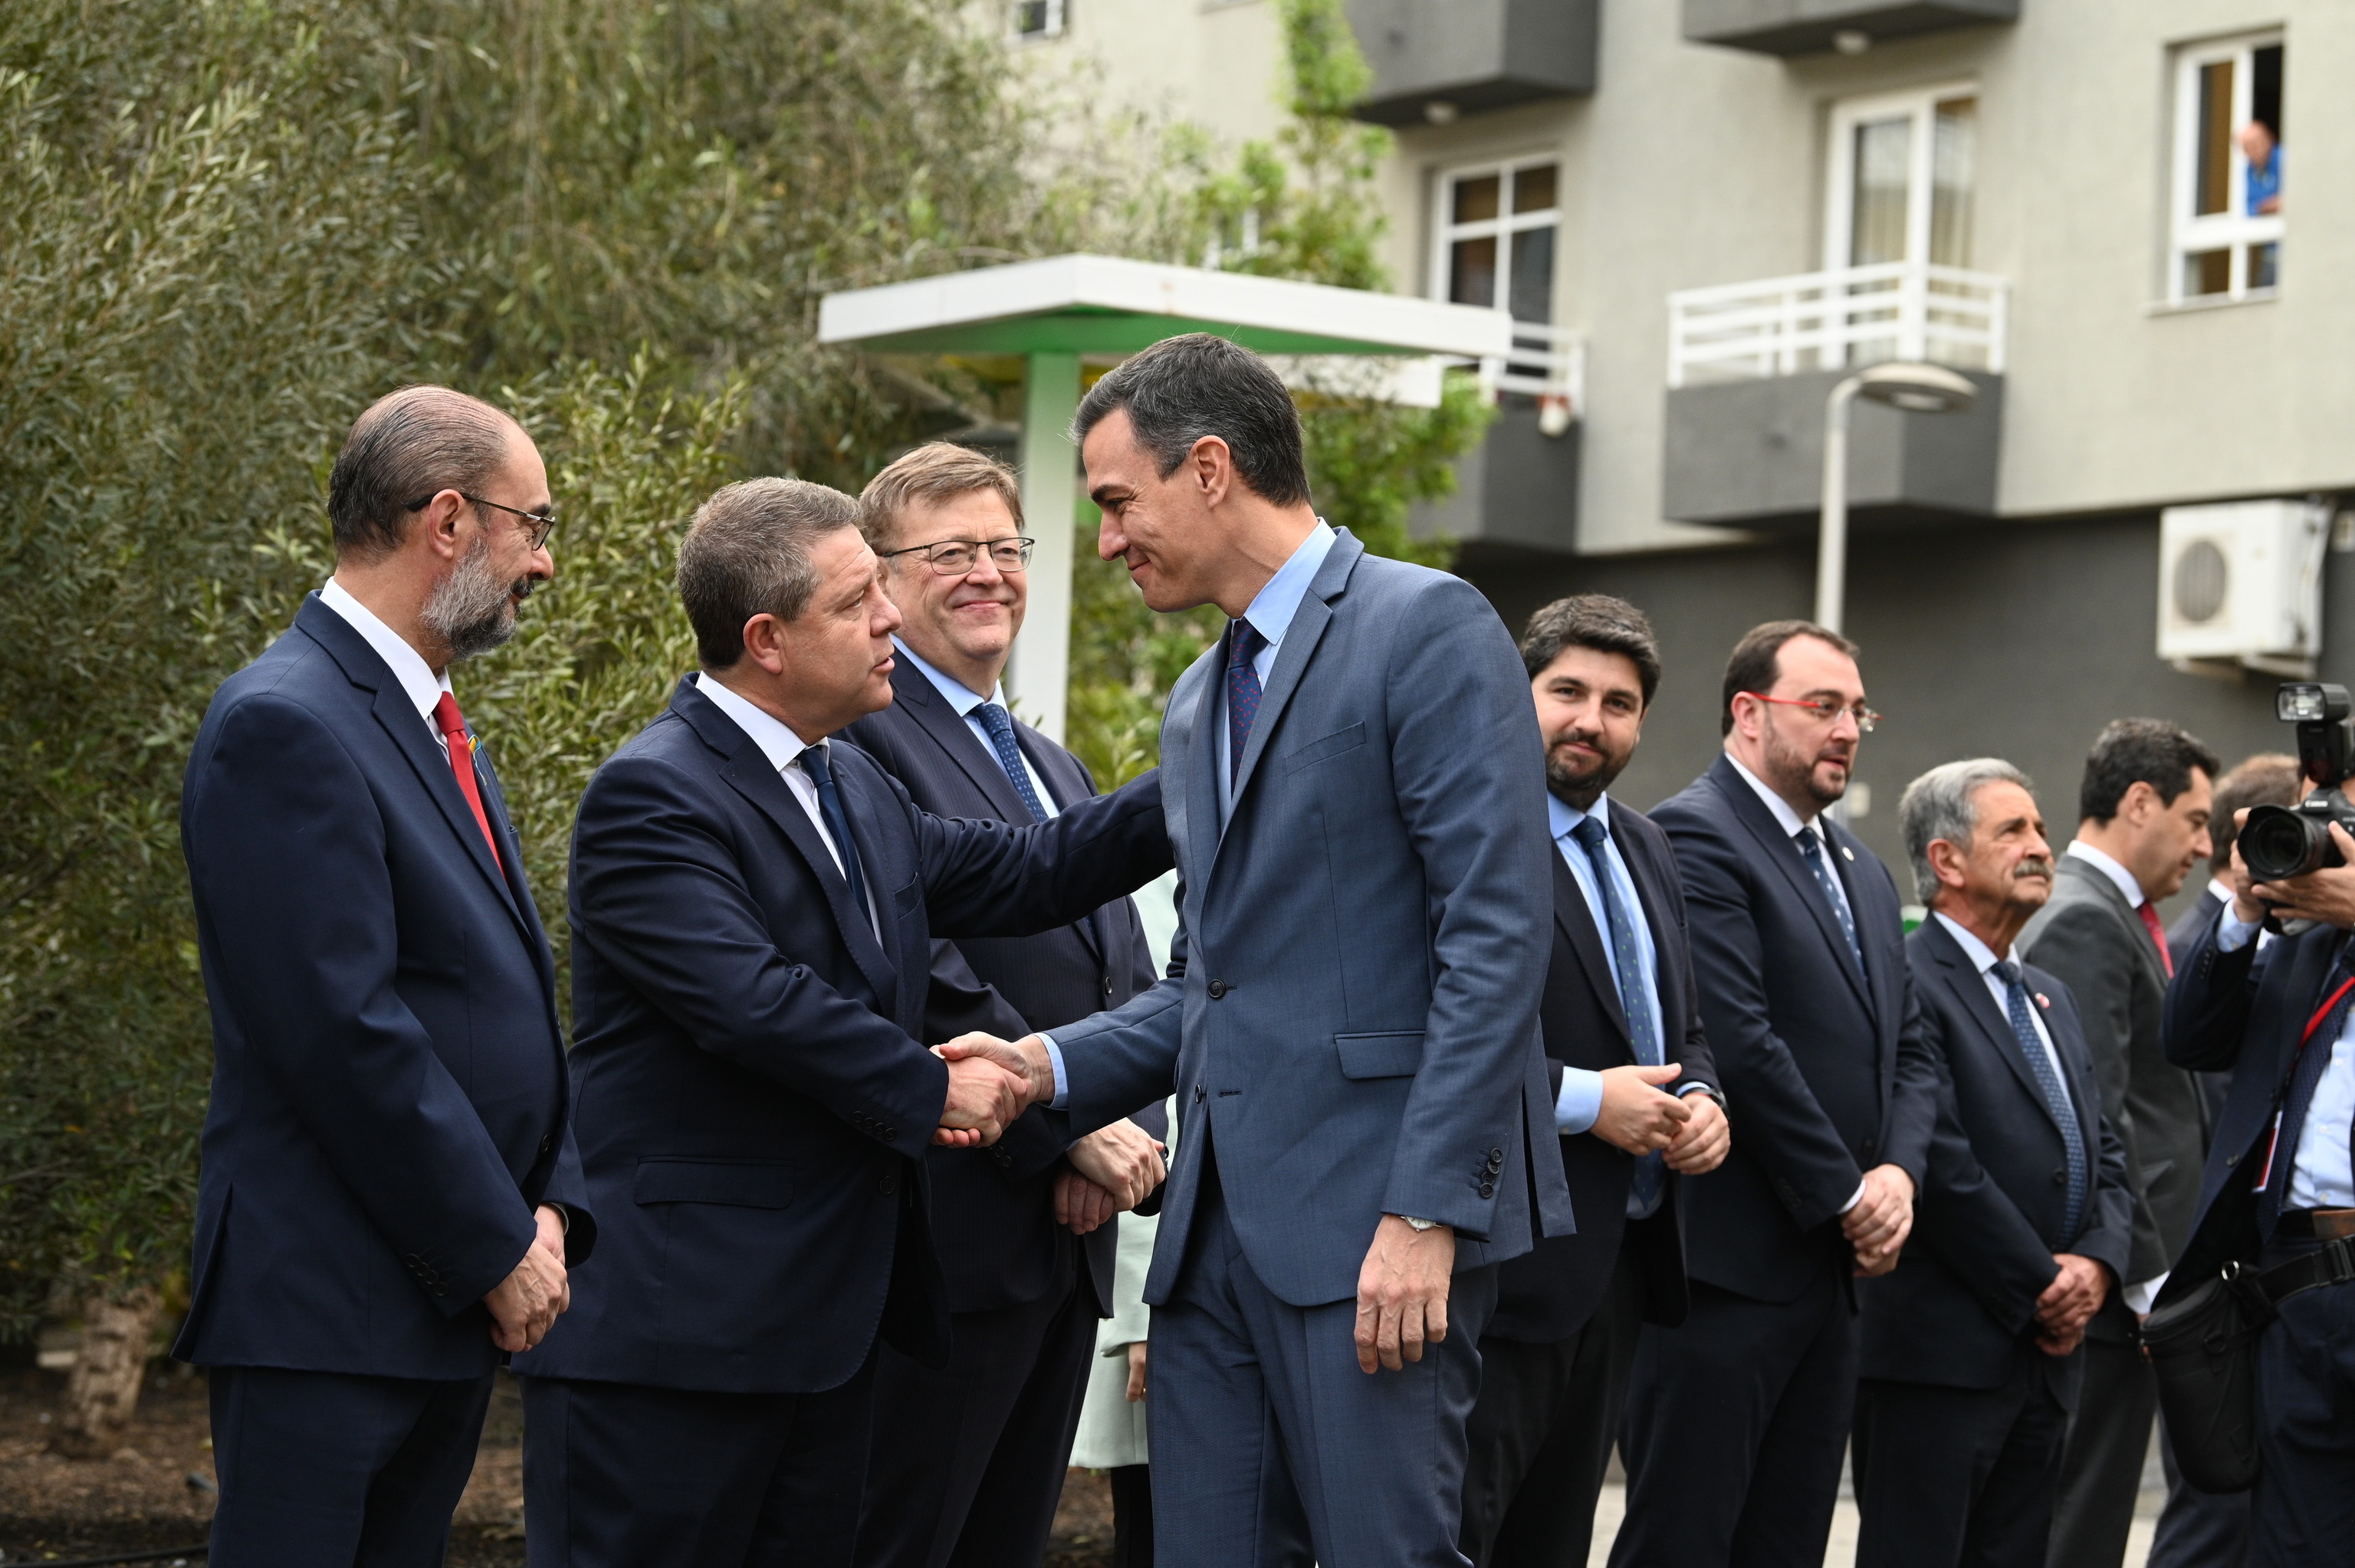 Pedro Snchez saluda a los asistentes a la XVI Conferencia de Presidentes celebrada en La Palma en marzo pasado.